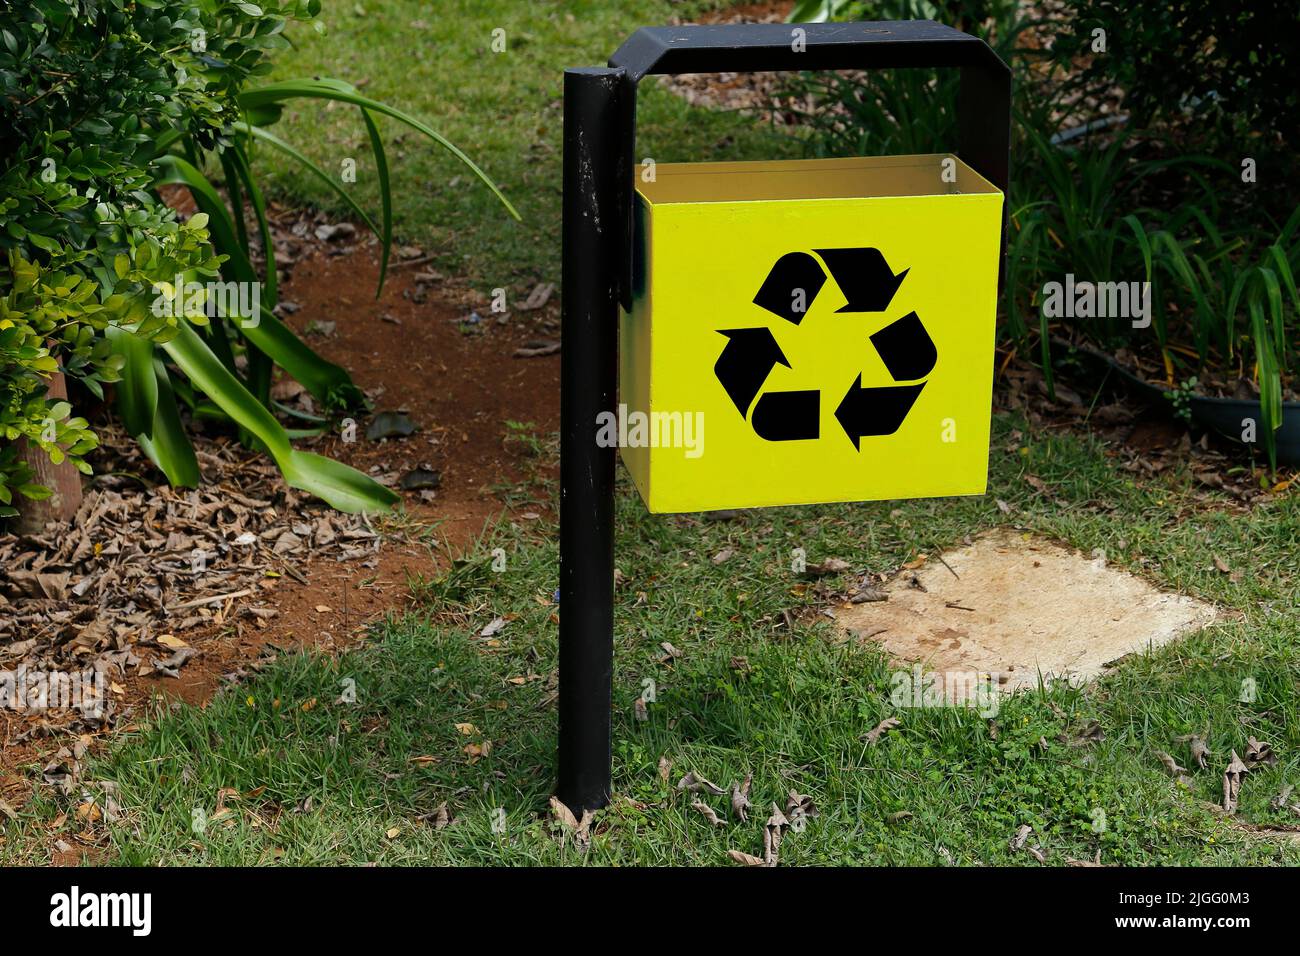 Gelber Metallabfallbehälter mit Recycling-Symbol im grünen öffentlichen Bereich und Garten - Müllabfuhr Stockfoto